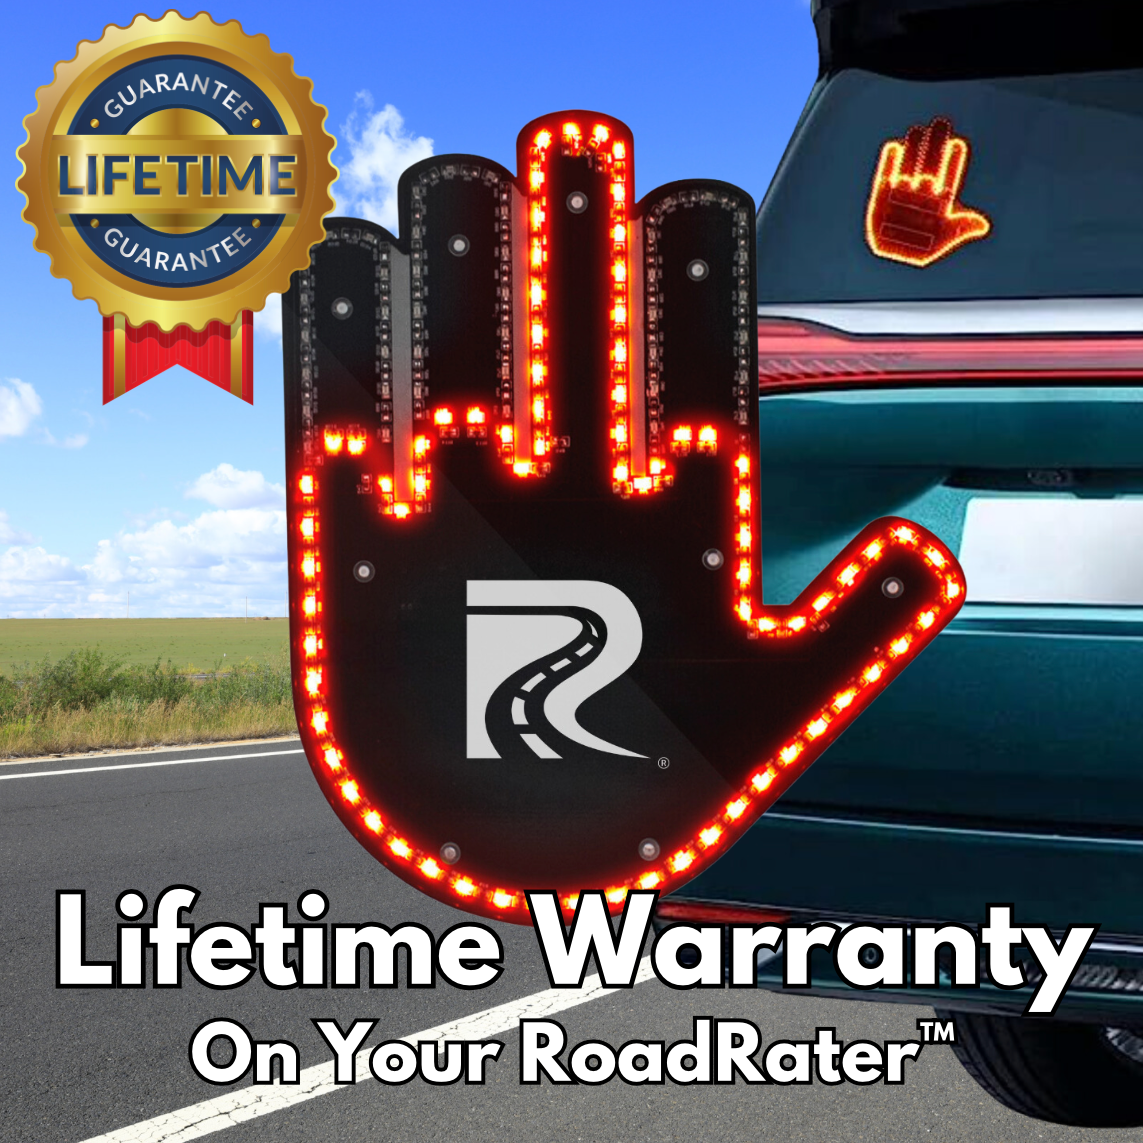 The RoadRater™ Lifetime Warranty